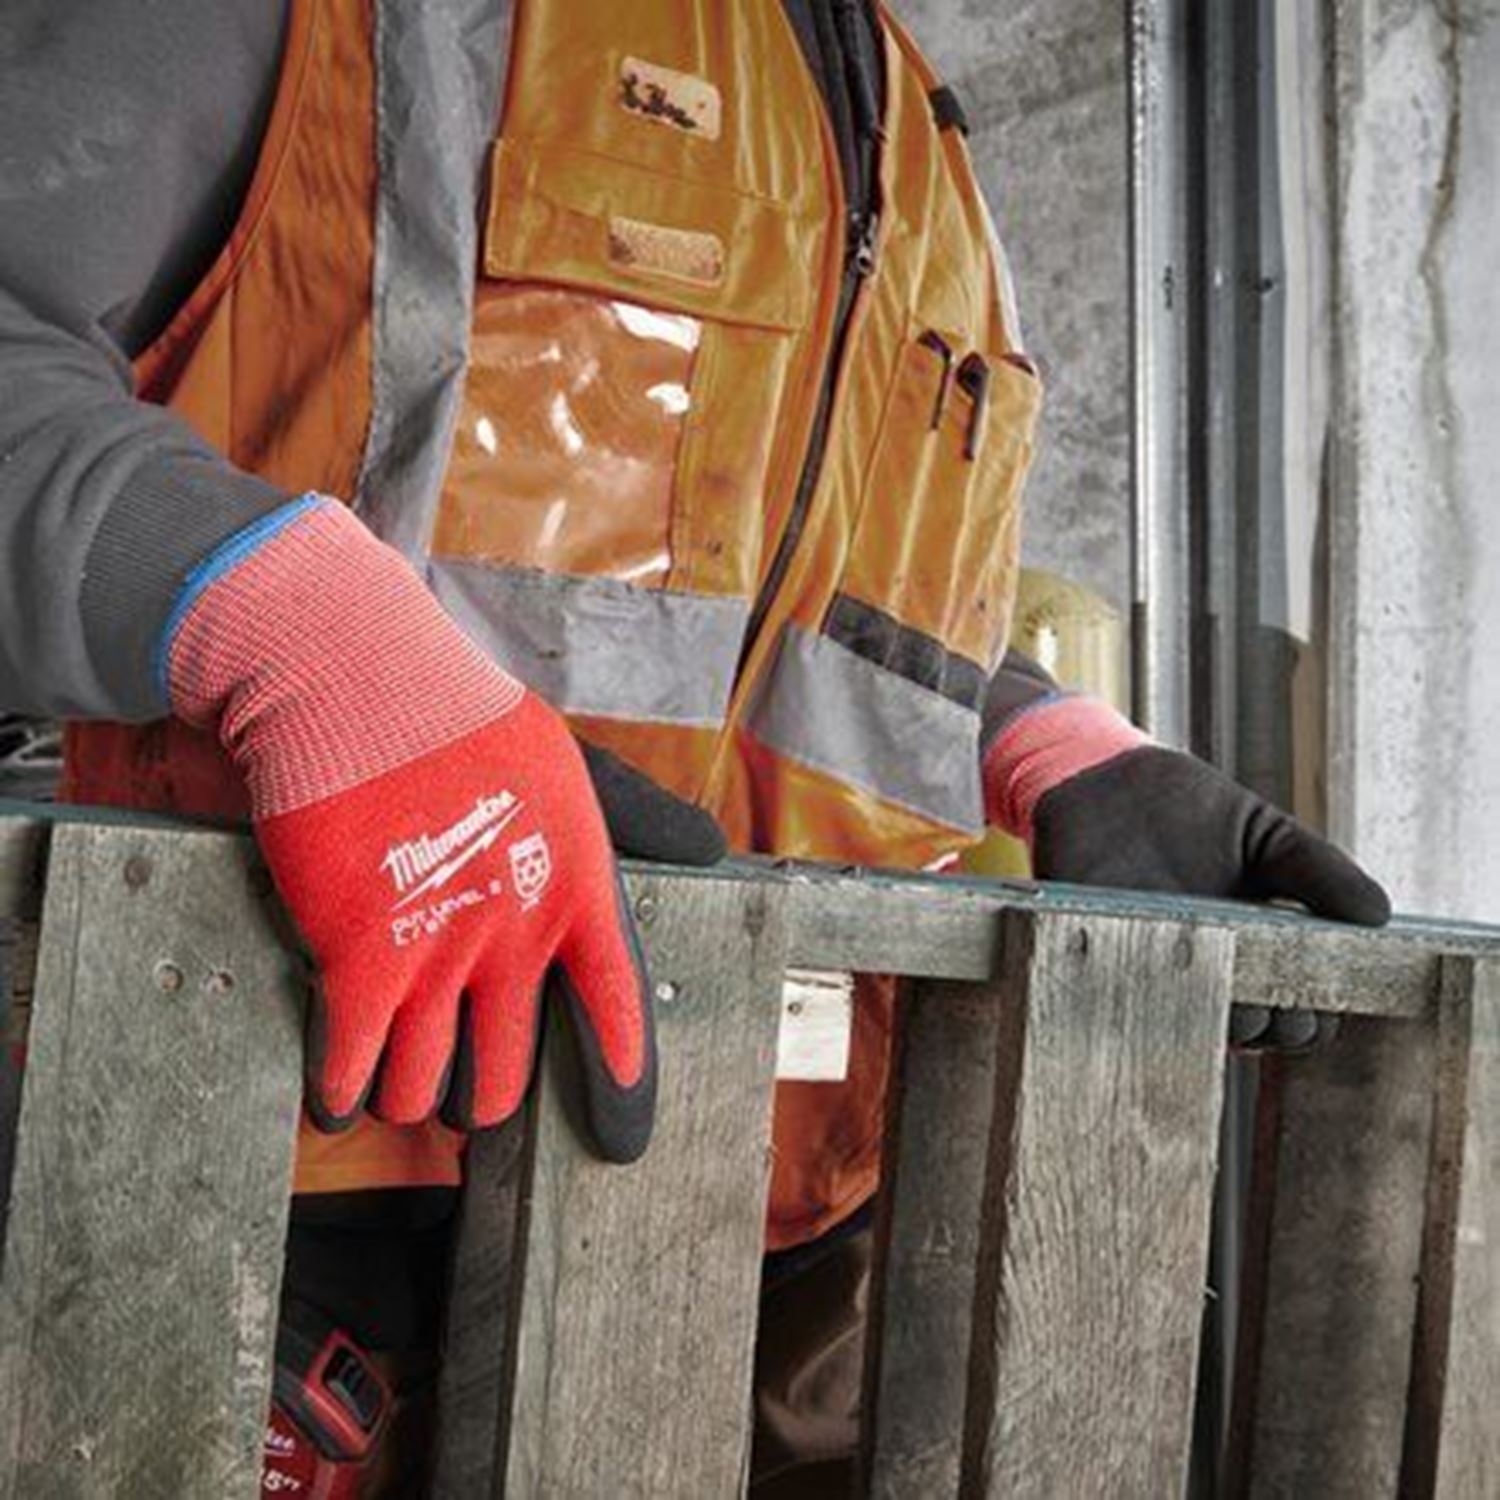 Снимка на Зимни устойчиви на порязване ръкавици CUT B, XXL, 4932480605, Milwaukee